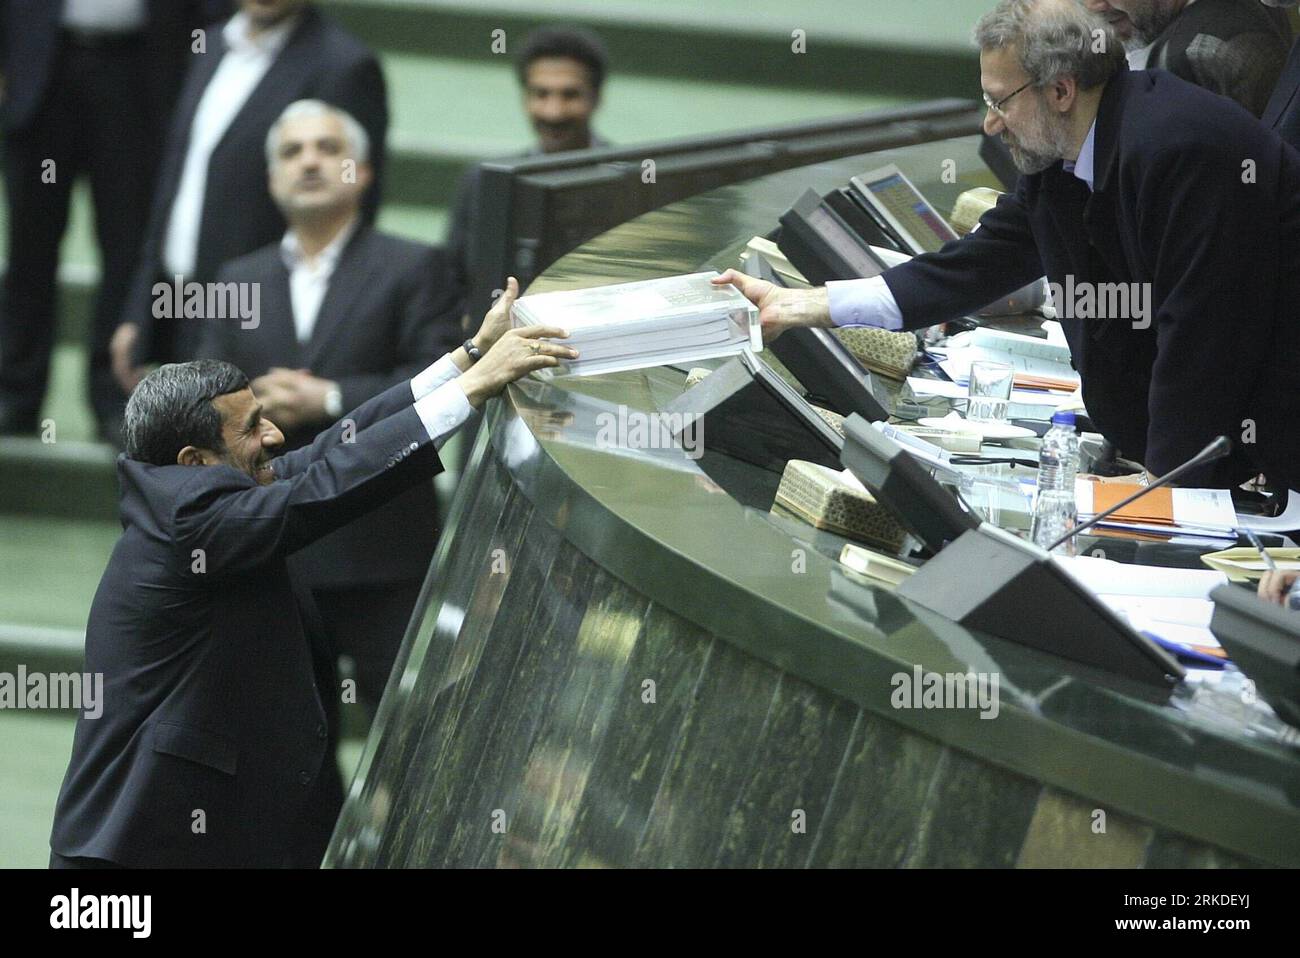 Bildnummer: 54930492  Datum: 20.02.2011  Copyright: imago/Xinhua (110220) -- TEHRAN, Feb. 20, 2011 (Xinhua) -- Iranian President Mahmoud Ahmadinejad (L) submits budget bill to Iranian Parliament Speaker Ali Larijani in the Majlis (Parliament) in Tehran, Iran, Feb. 20, 2011. Ahmadinejad submitted a 1,769-trillion-rial (nearly 180 billion dollars) budget bill for the upcoming fiscal year to the Parliament on sunday.(Xinhua/Ahmad Halabisaz)(zl) IRAN-TEHERAN-AHMADINEJAD-BUDGET BILL PUBLICATIONxNOTxINxCHN People Politik kbdig xkg 2011 quer premiumd     Bildnummer 54930492 Date 20 02 2011 Copyright Stock Photo